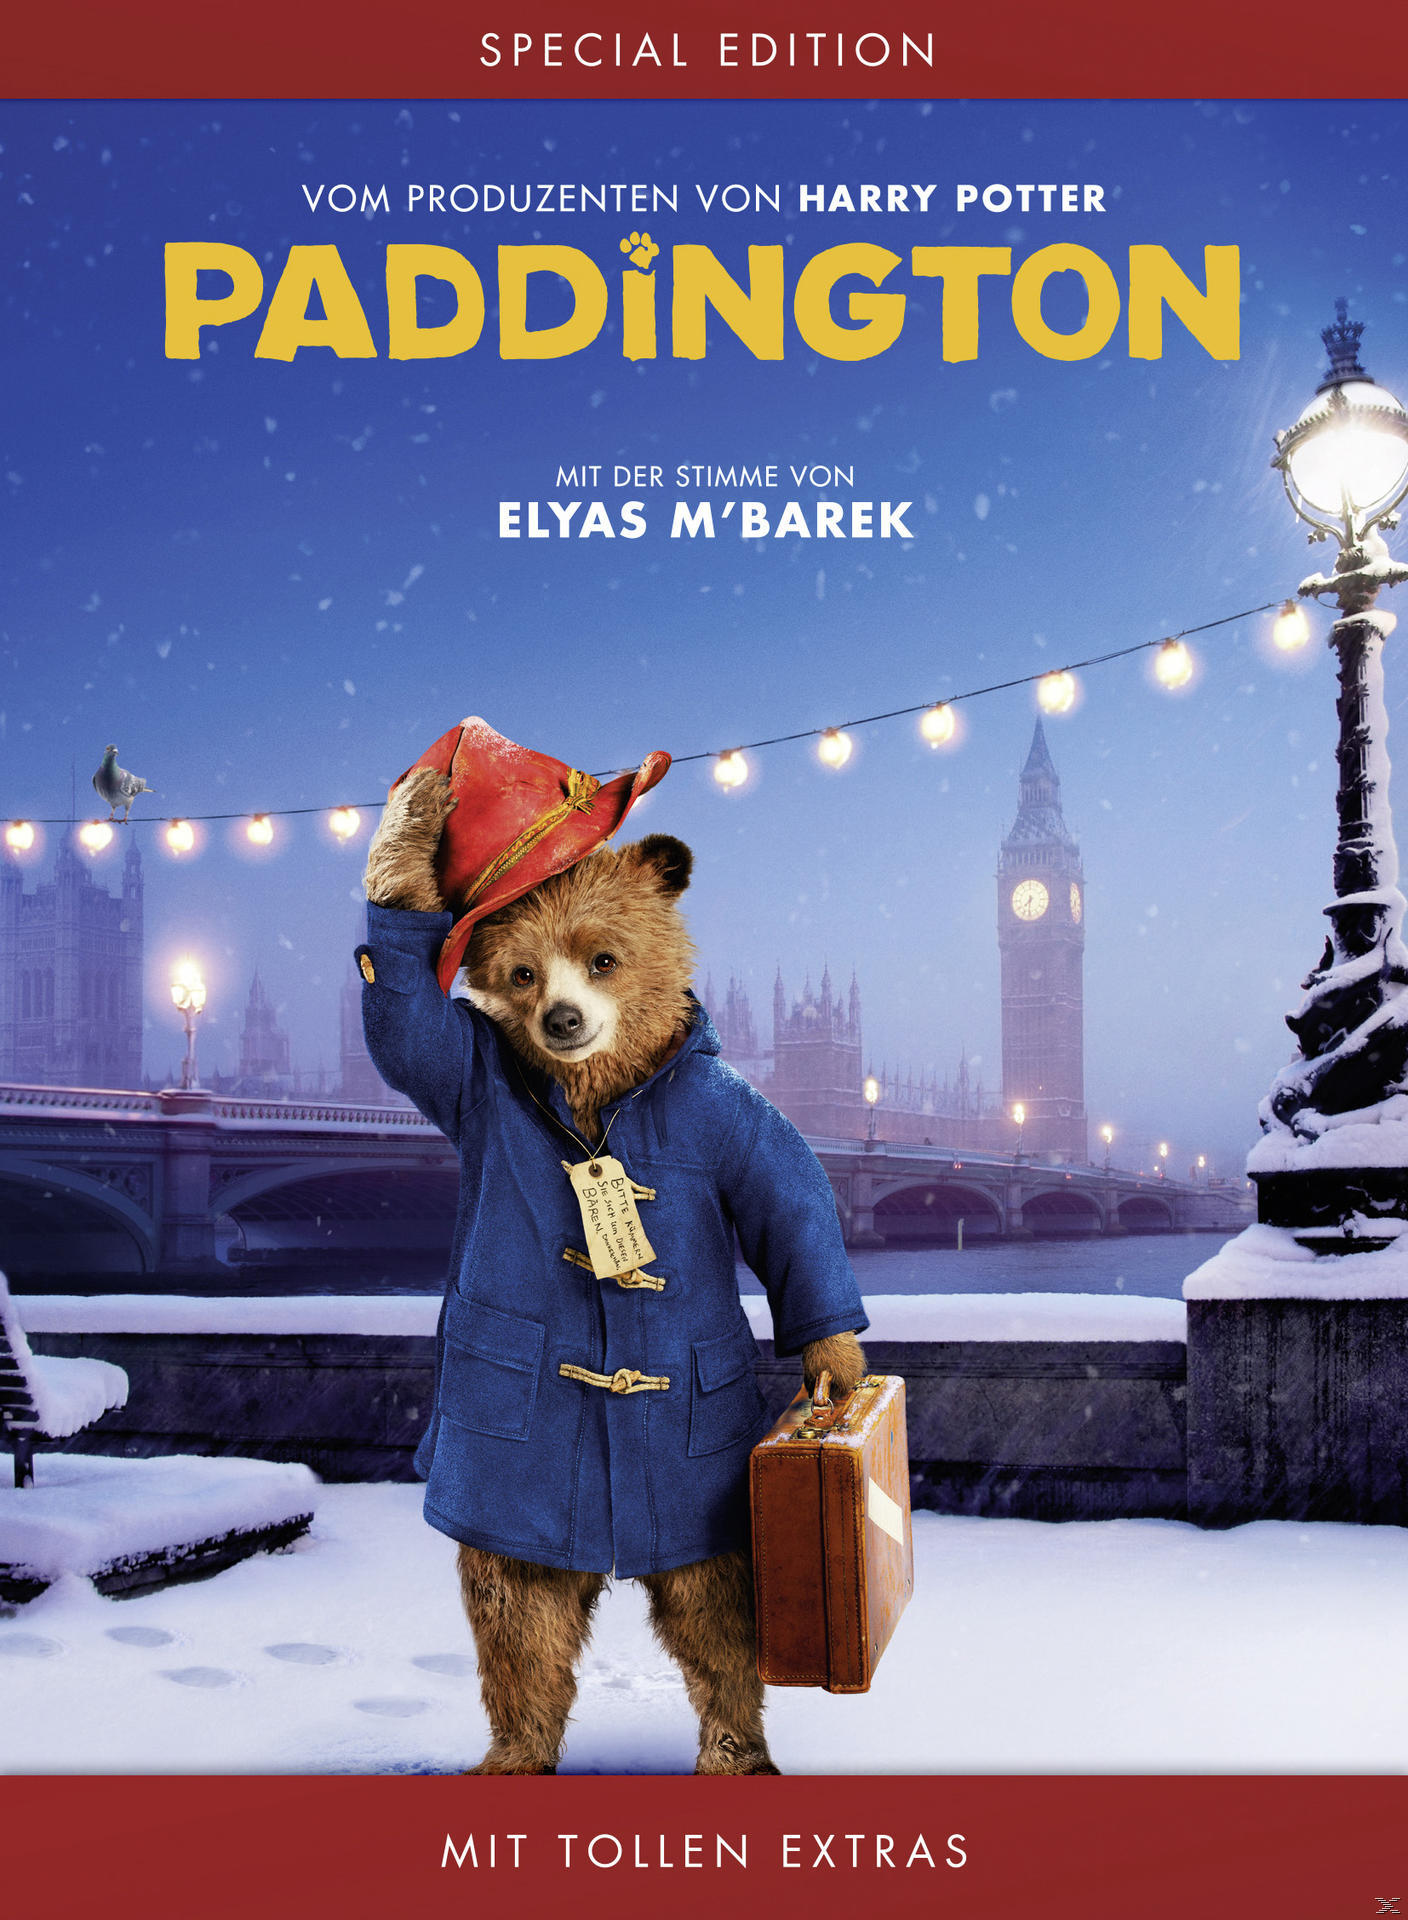 DVD Edition) Paddington (Christmas